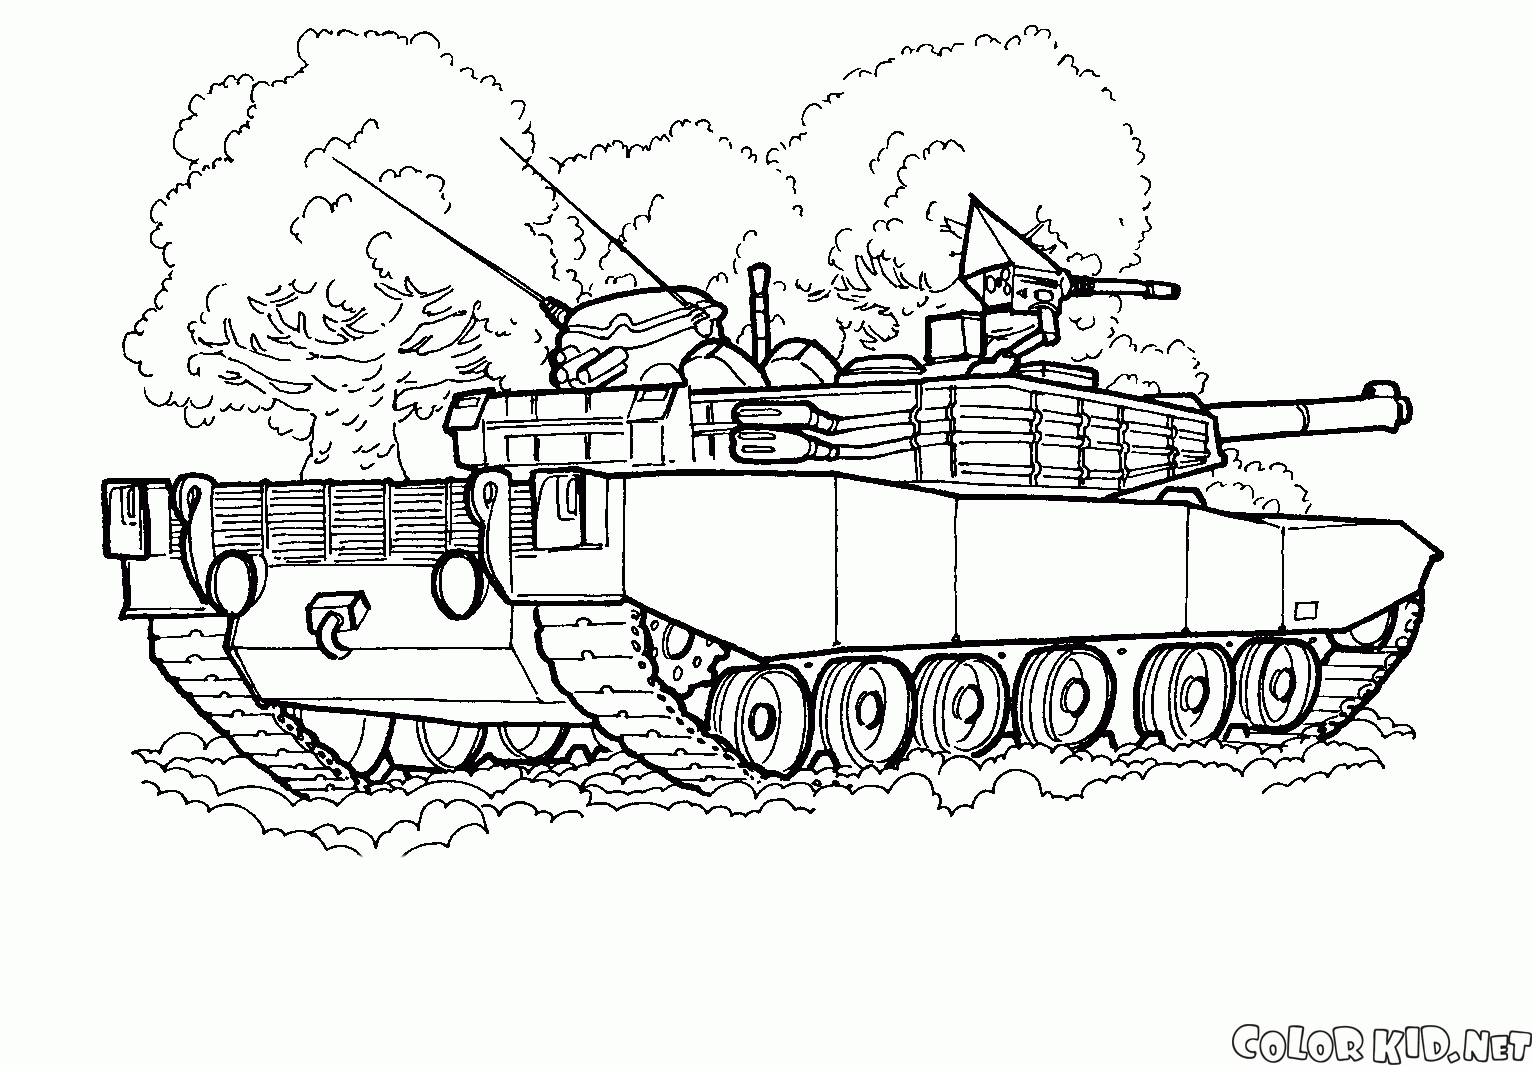 坦克（韓國）